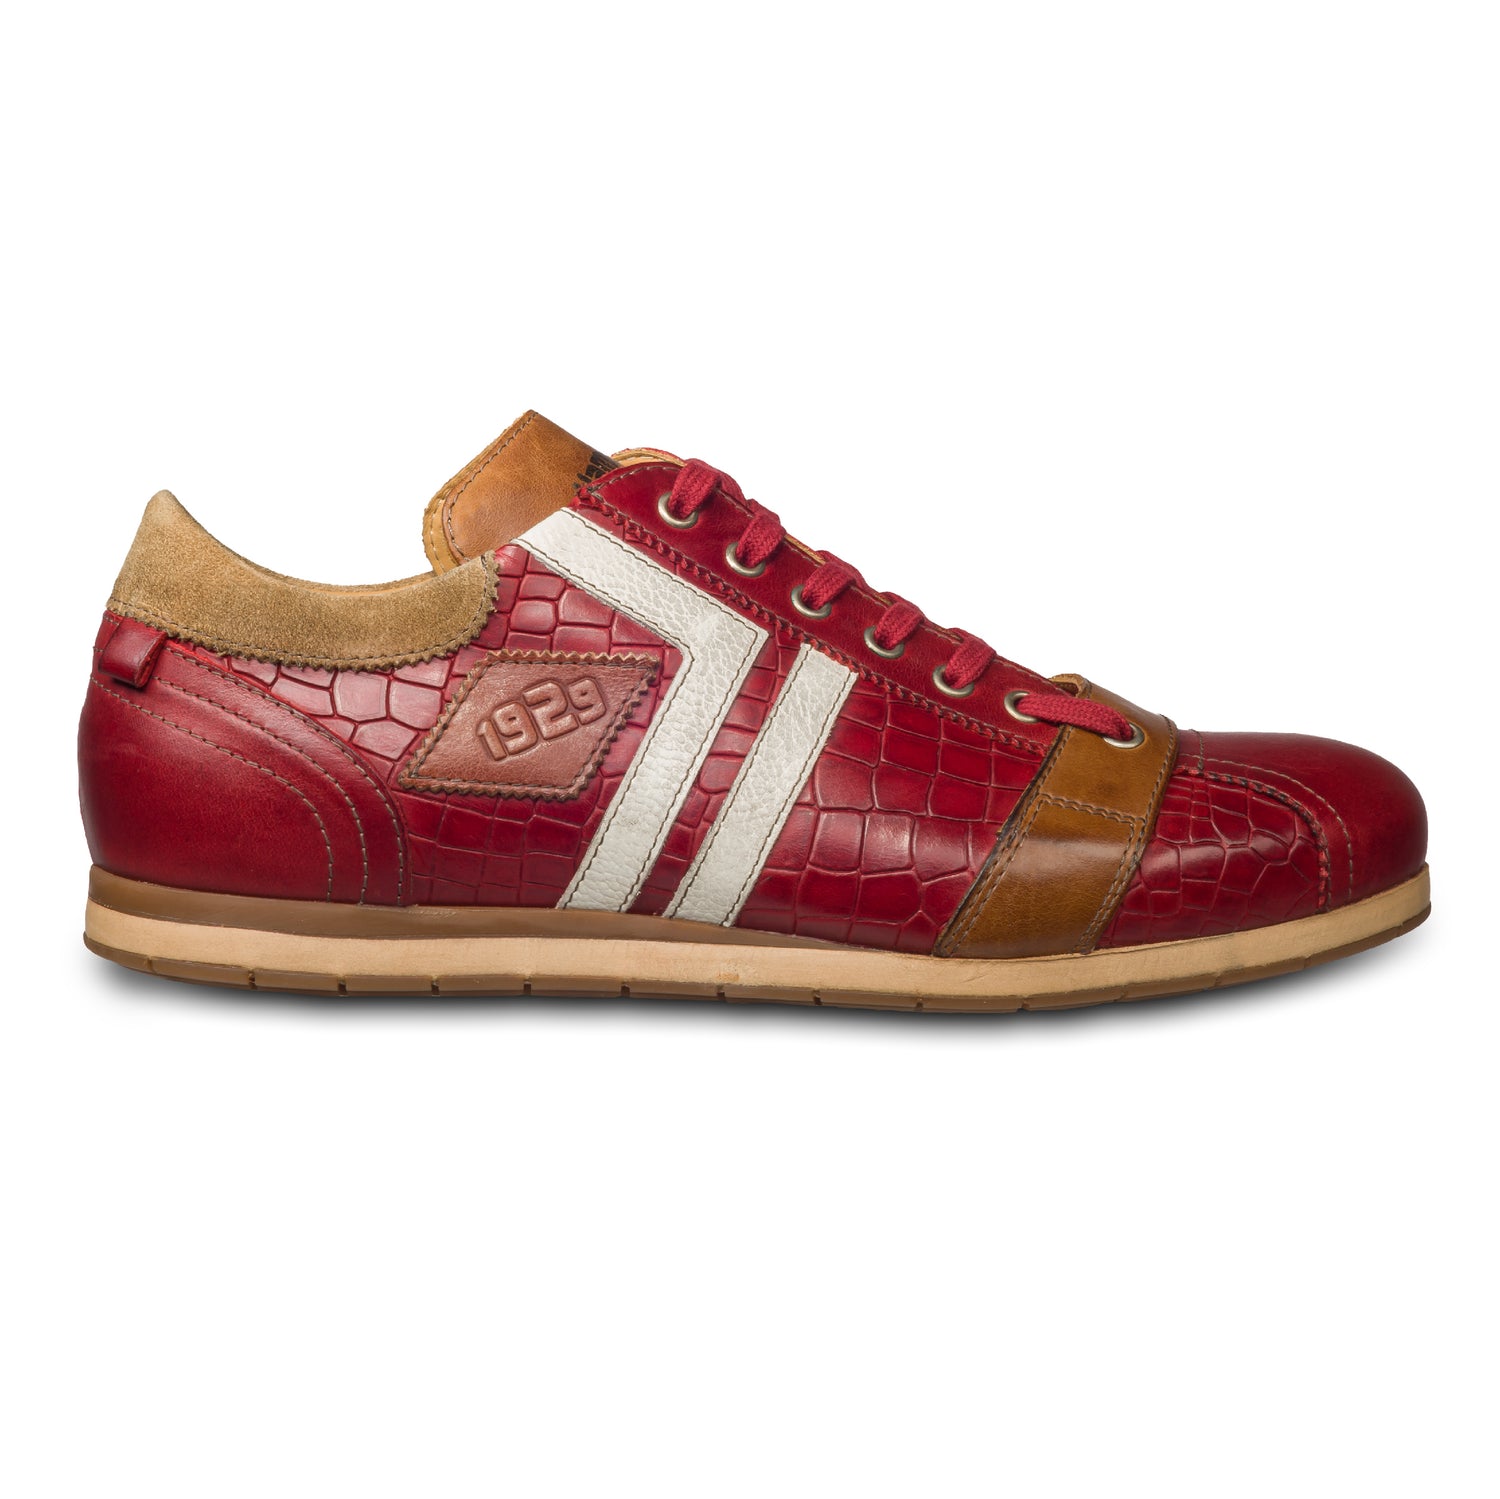 KAMO-GUTSU Herren Leder Sneaker, rot, Modell TIFO-030 croco rosso. Handgefertigt. Seitliche Ansicht der Außenseite rechter Schuh.